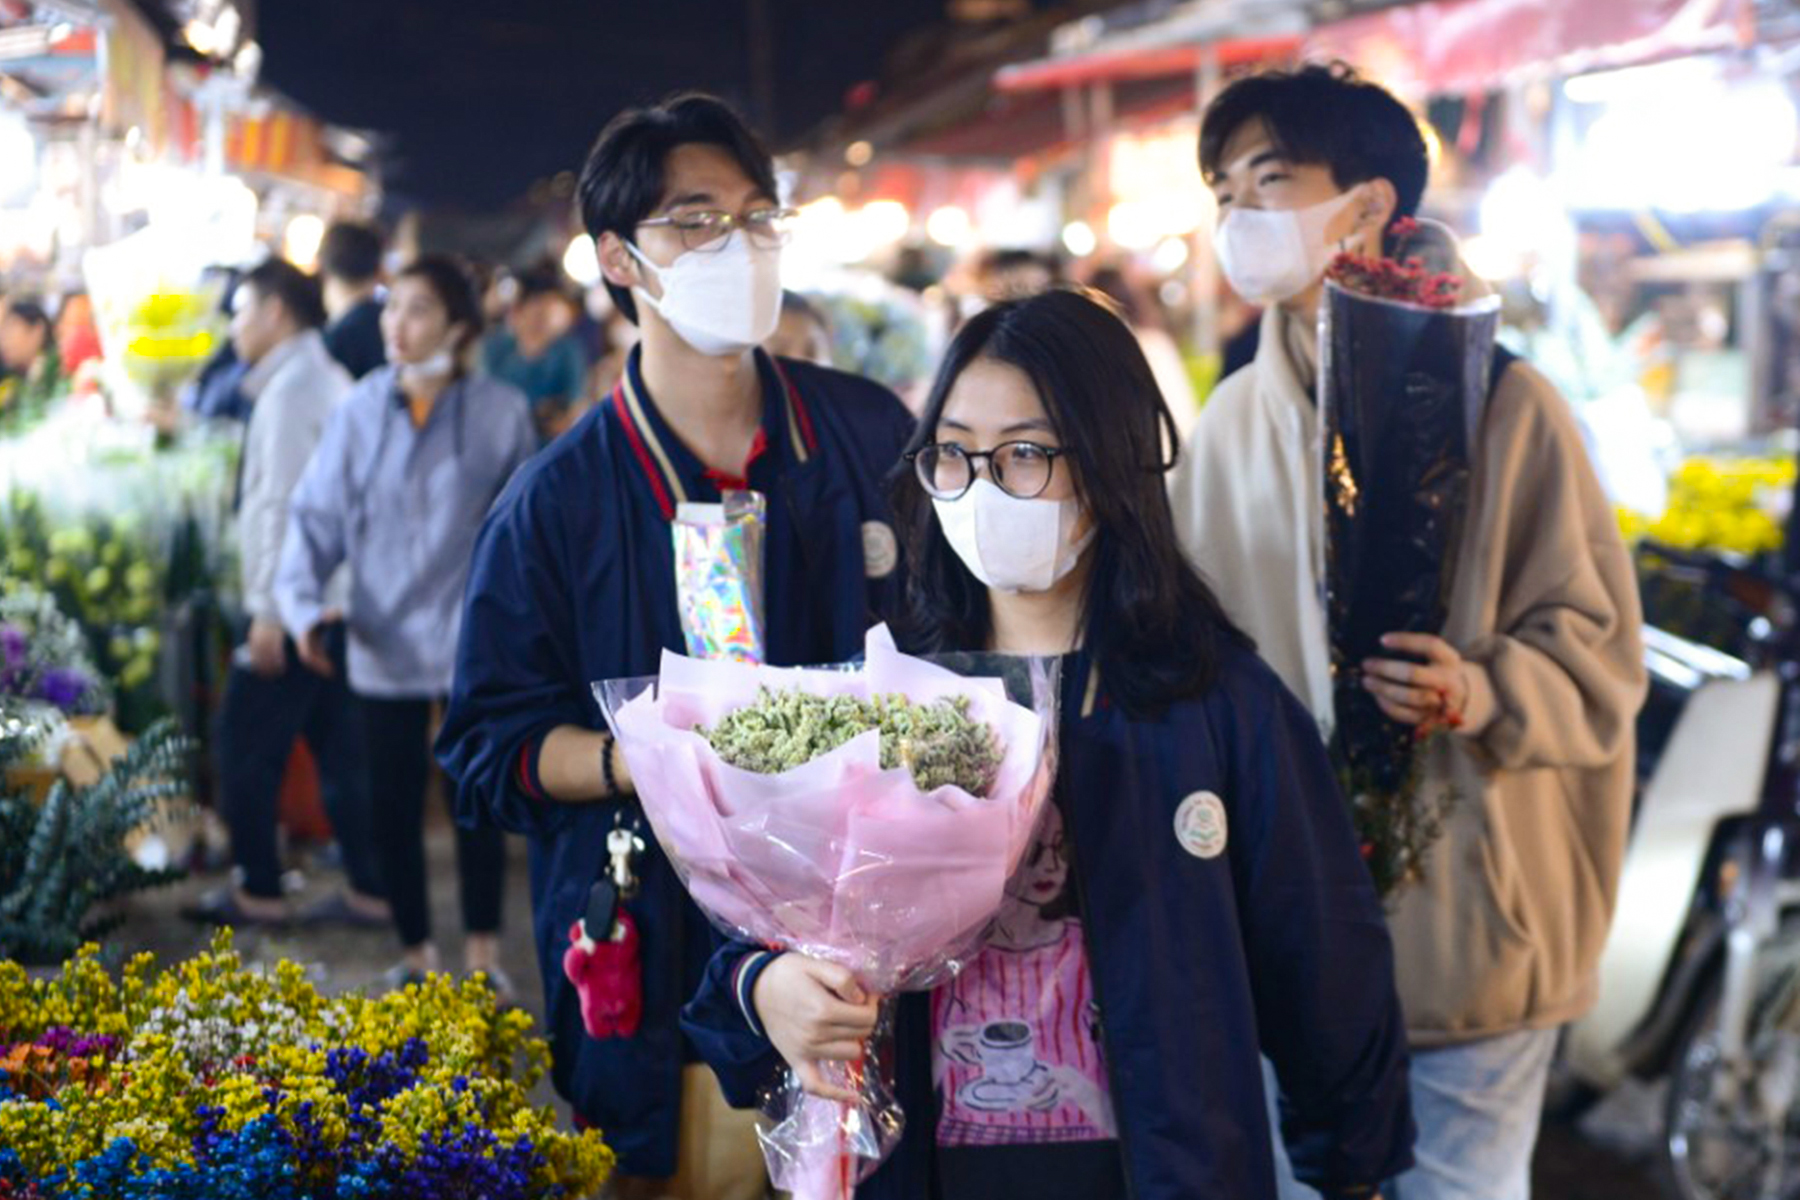 Hoa hồng tăng gấp 3 lần, chợ hoa lớn nhất Hà Nội đông nghịt người trước 8.3 - Ảnh 6.